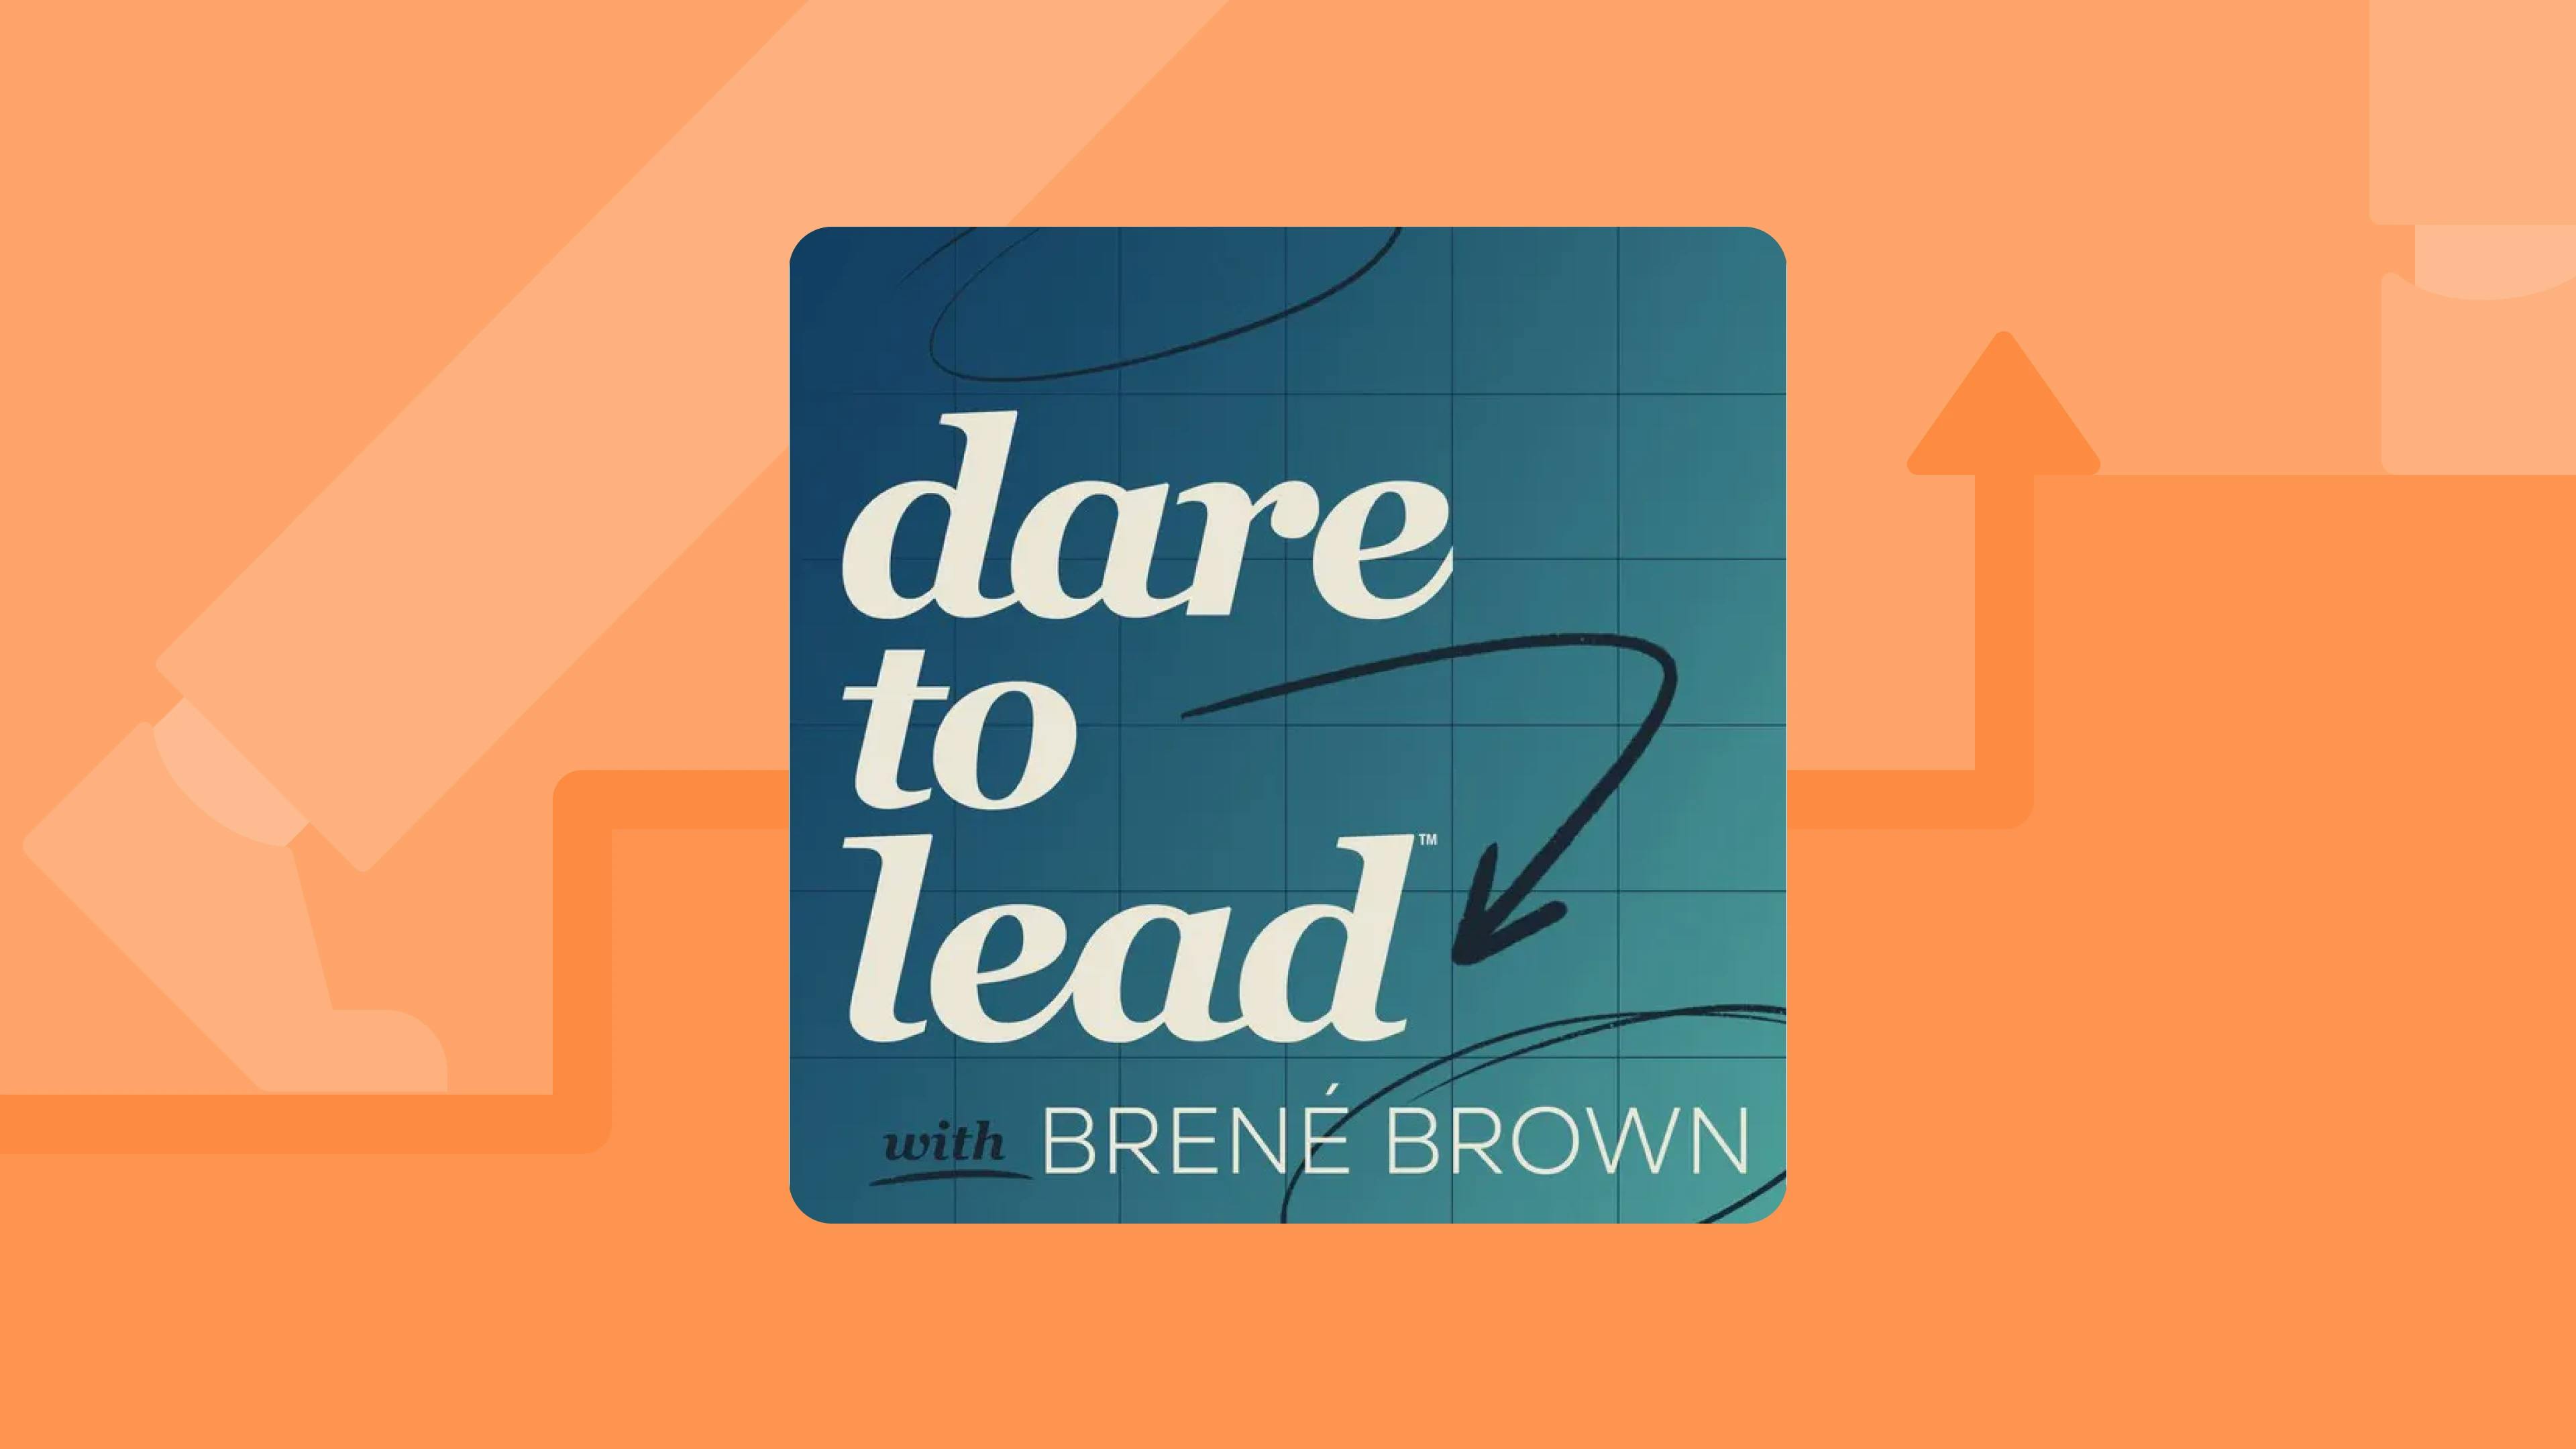 dare_to_lead